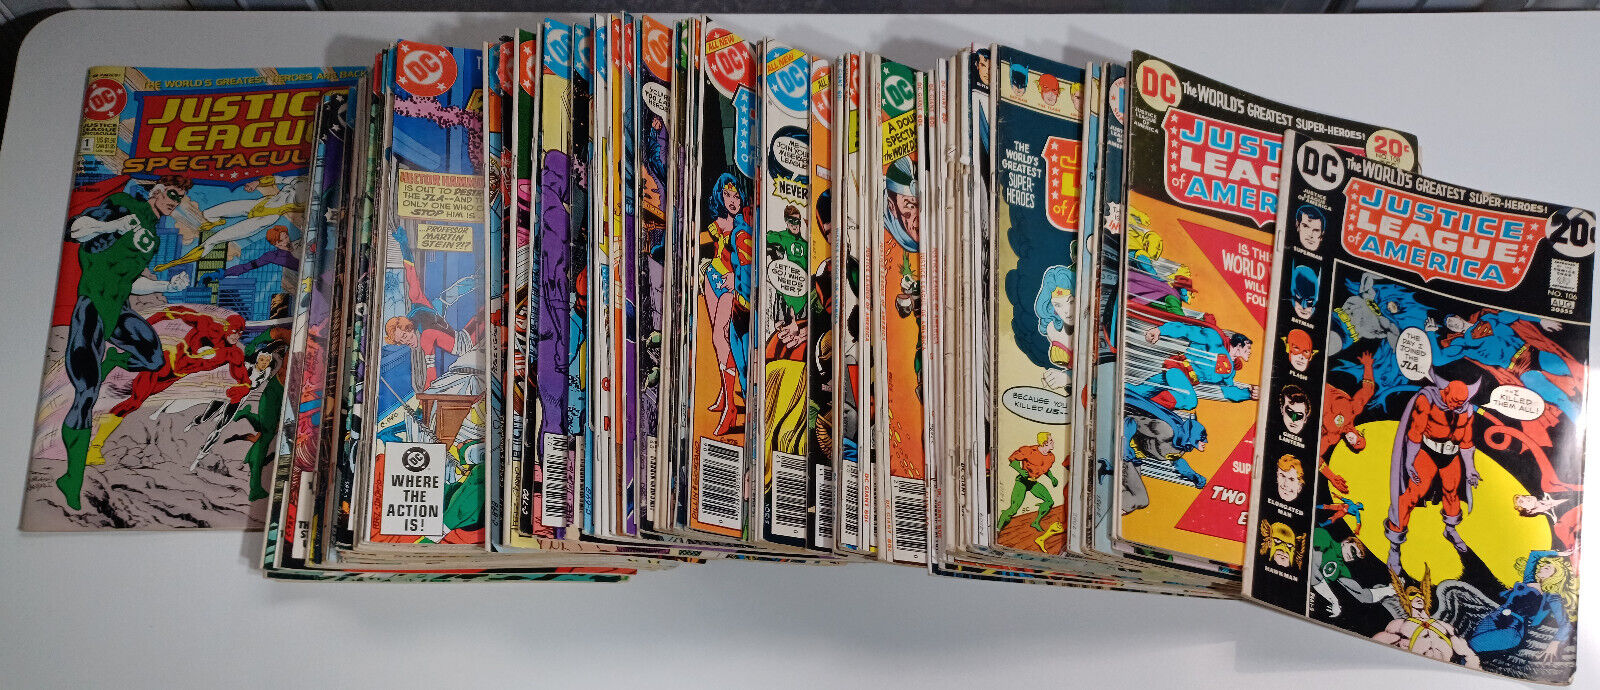 Justice League of America JLA Vol 1 DC Comics Lot of 74 Issues Between 106 - 232